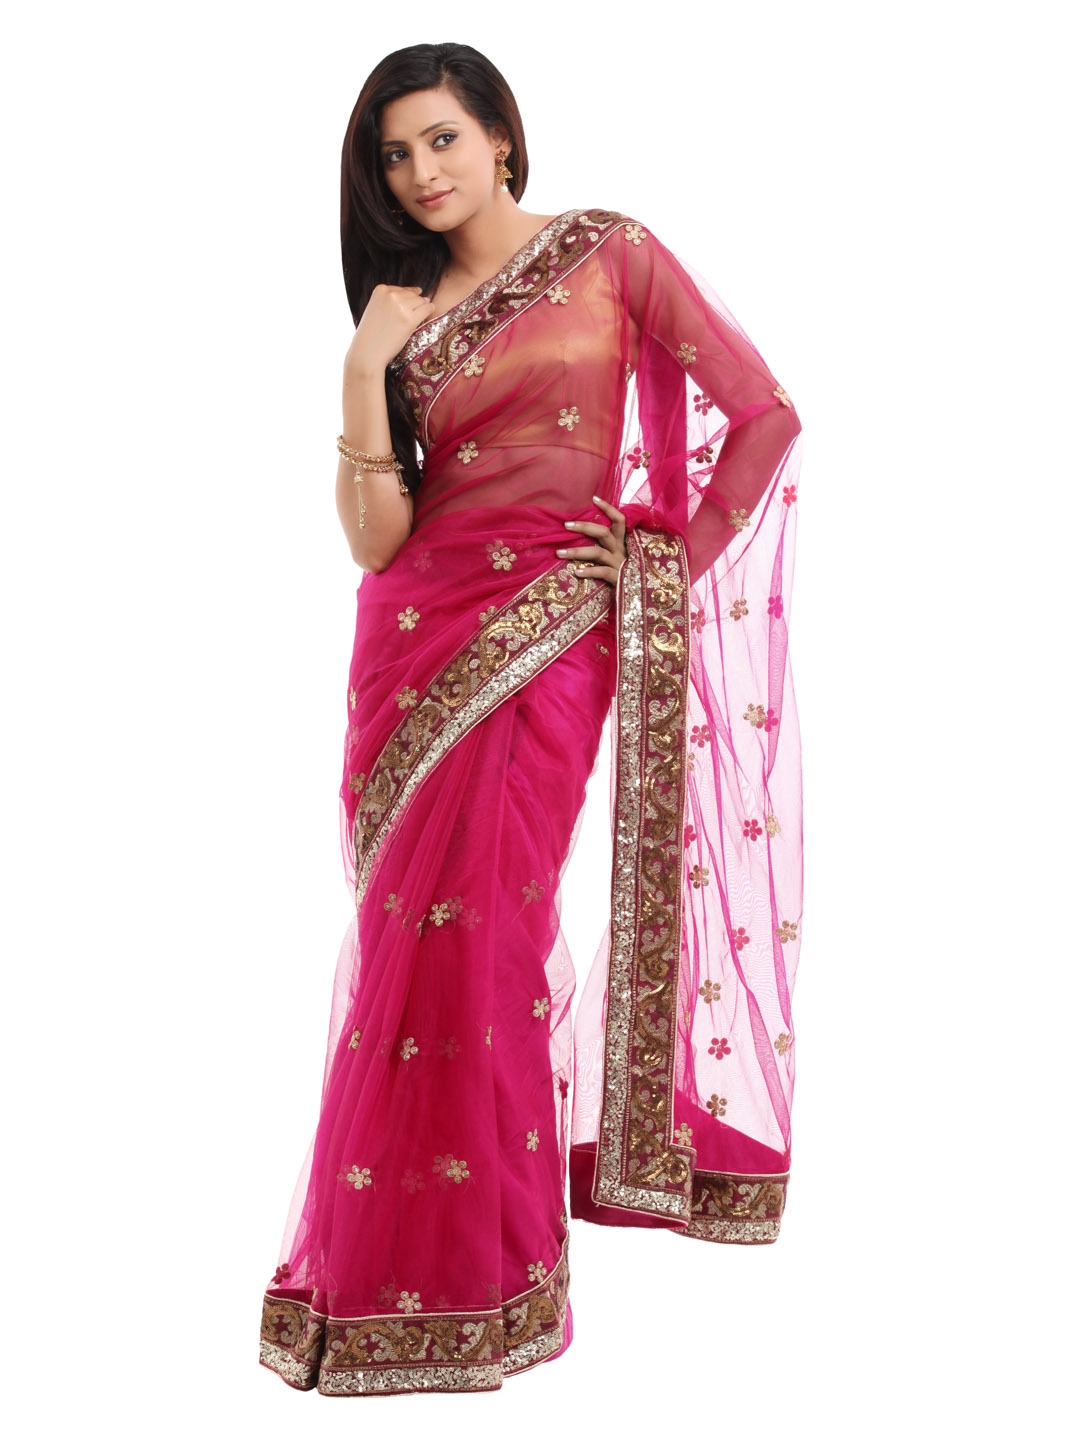 Satyavee-Designs-Pink-Sari_c475f44dec077768dd411099ca380645_images_1080_1440_mini.jpg